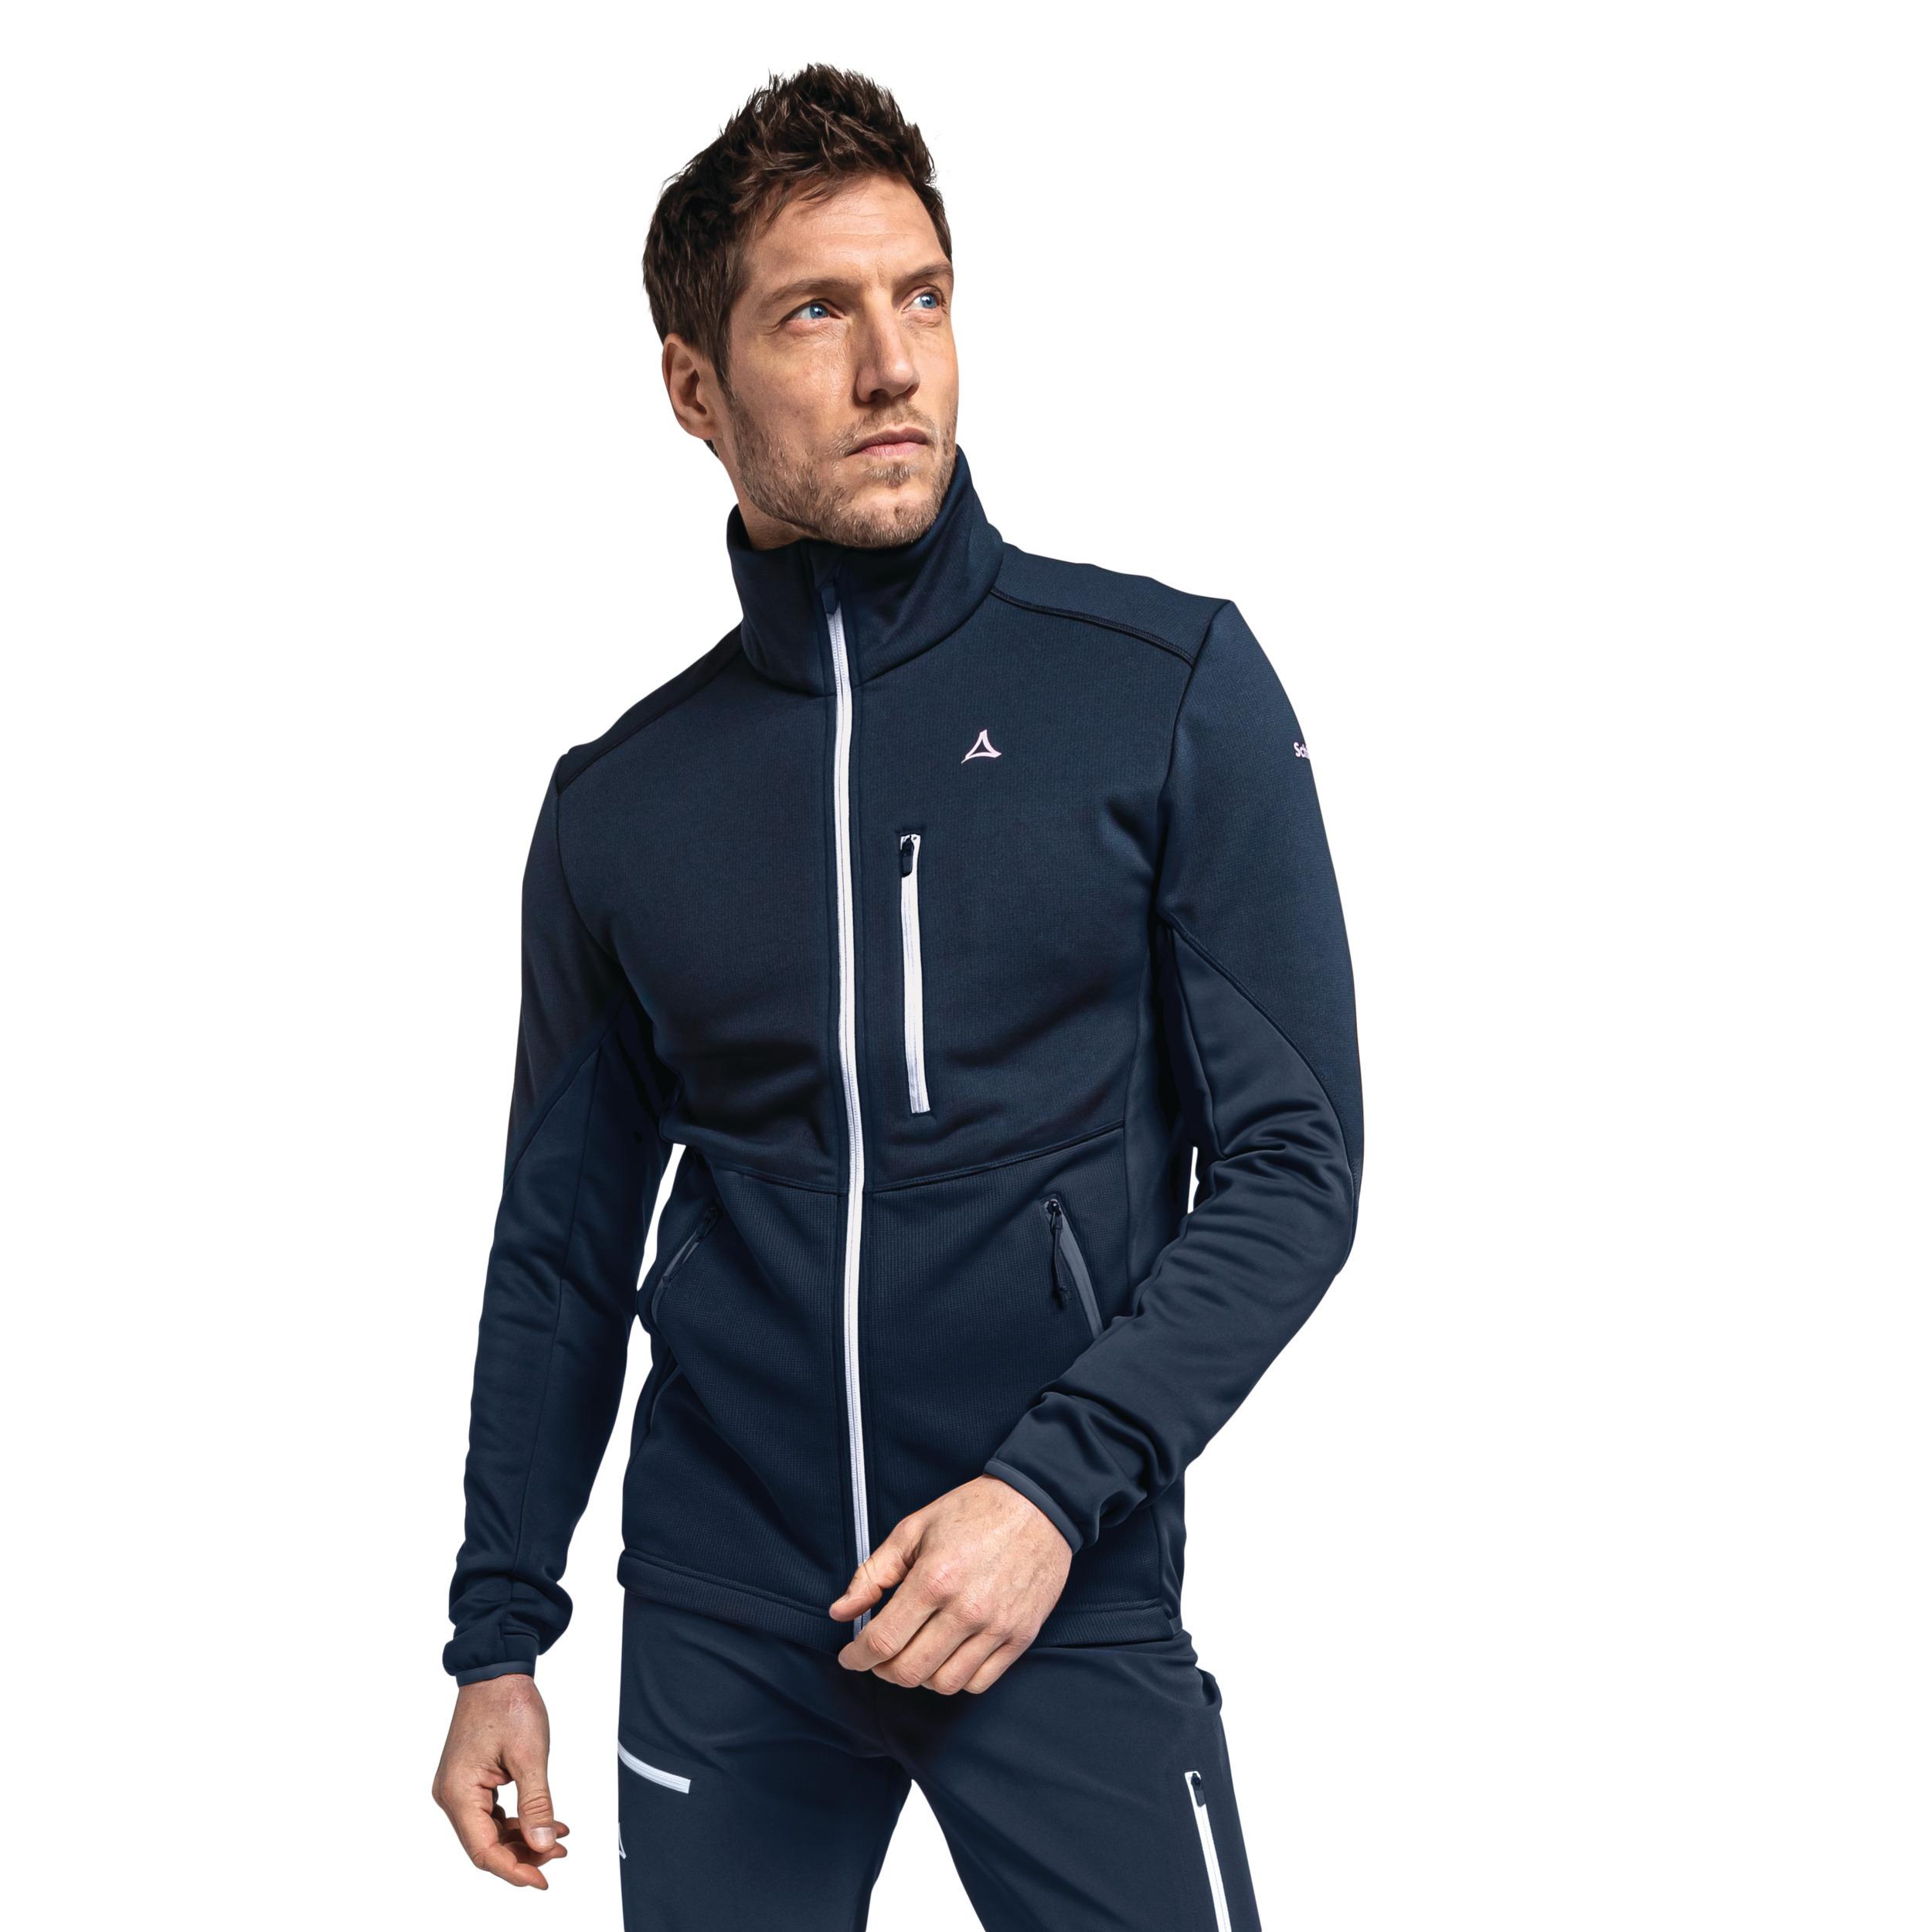 M kaufen im navy Lodron Schöffel Herren Shop Fleece blazer SportScheck von Fleecejacke Online Jacket